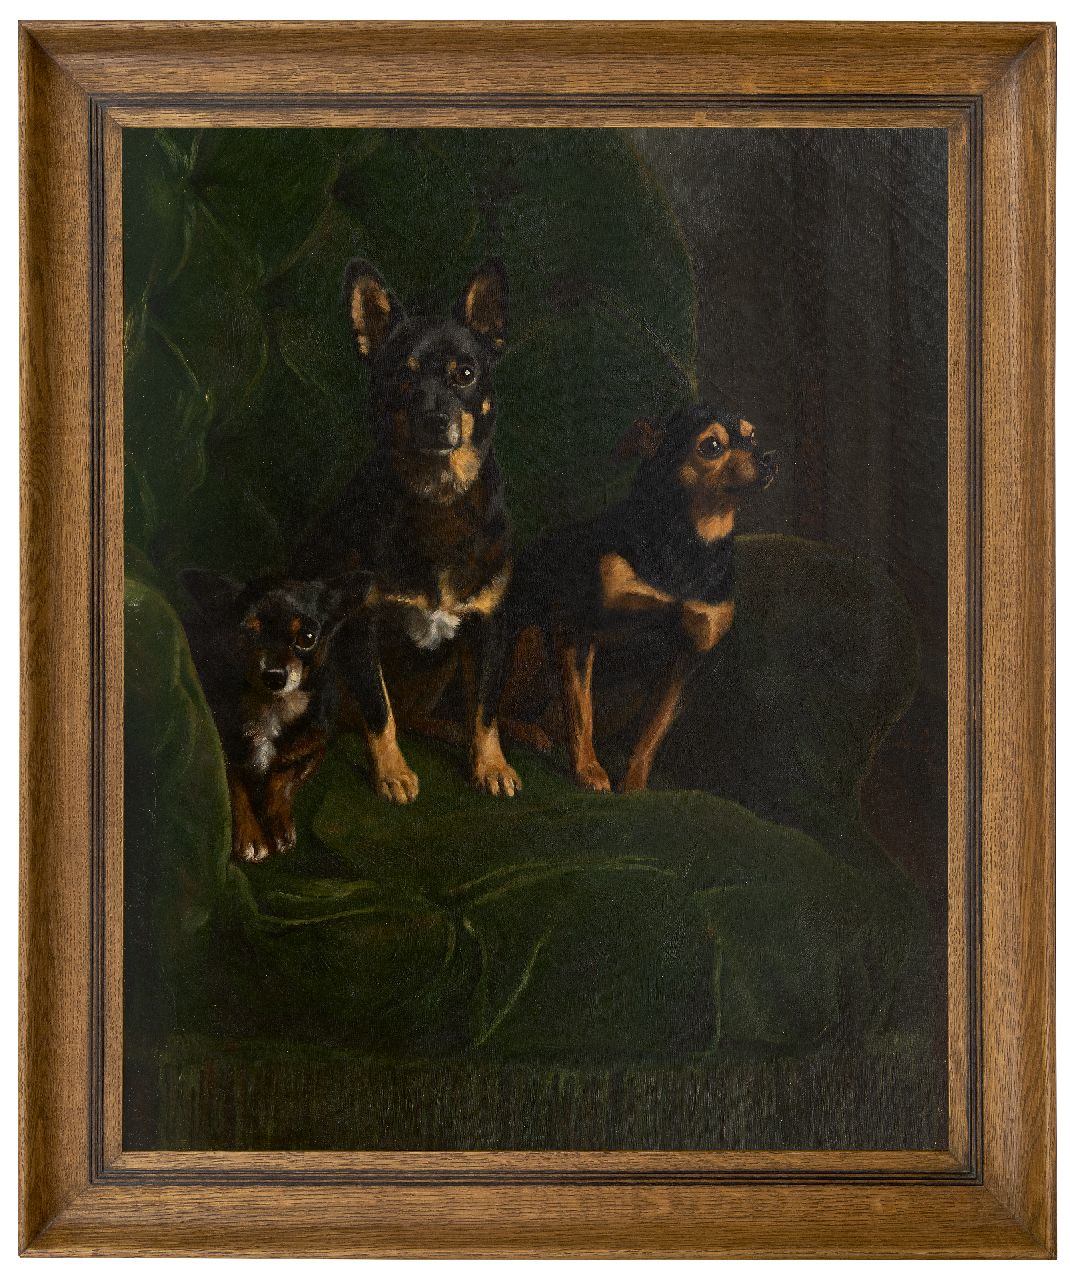 Gras A.J. Le | 'August' Johannes Le Gras | Schilderijen te koop aangeboden | Drie dwergpinchers in groene stoel, olieverf op doek 81,2 x 65,5 cm, gesigneerd rechts van het midden en gedateerd 1888